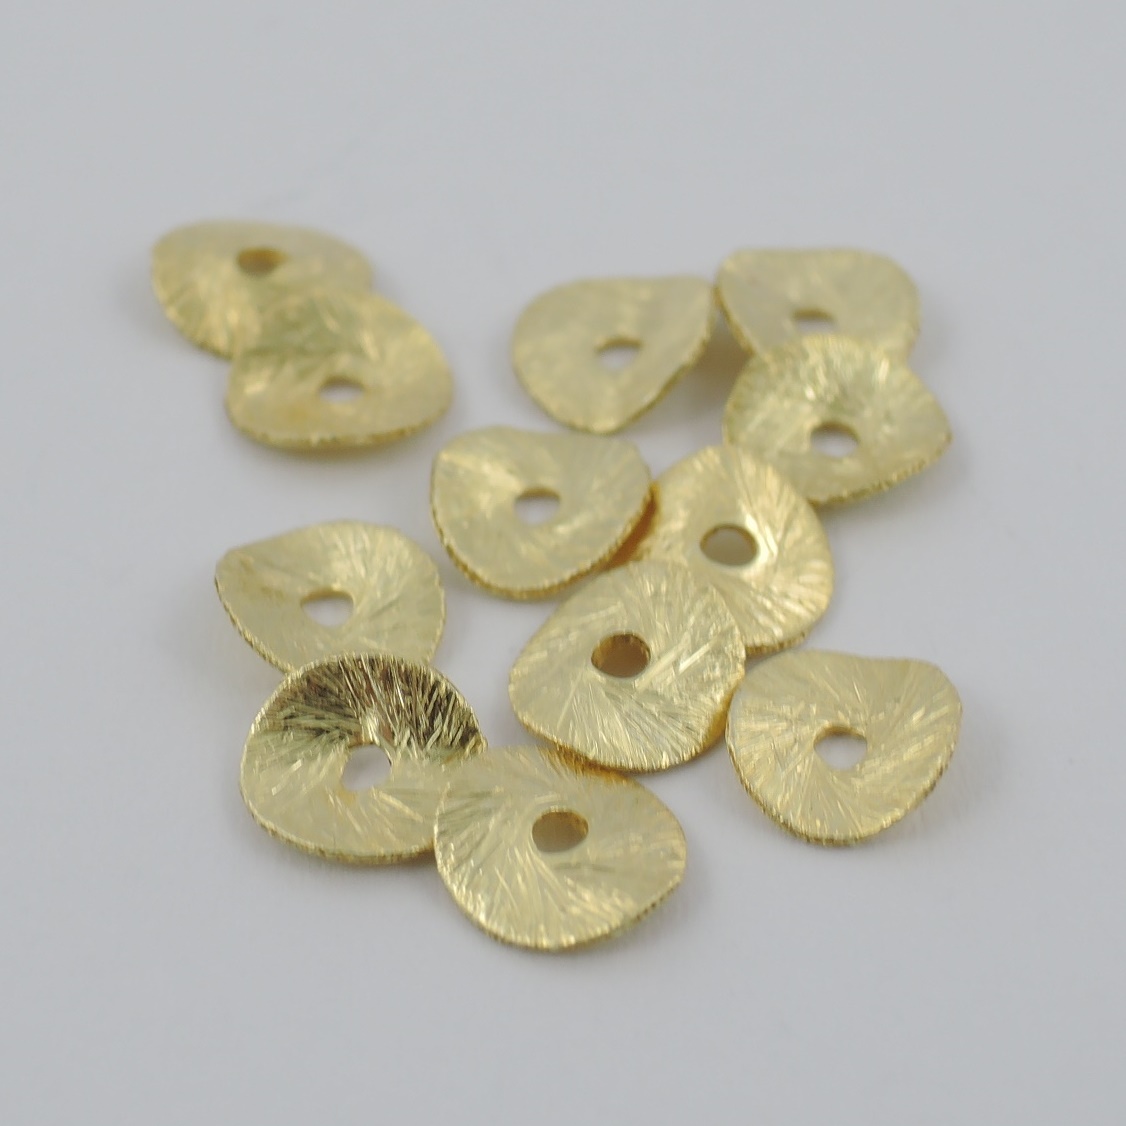 Scheibe Silber vergoldet 10 mm